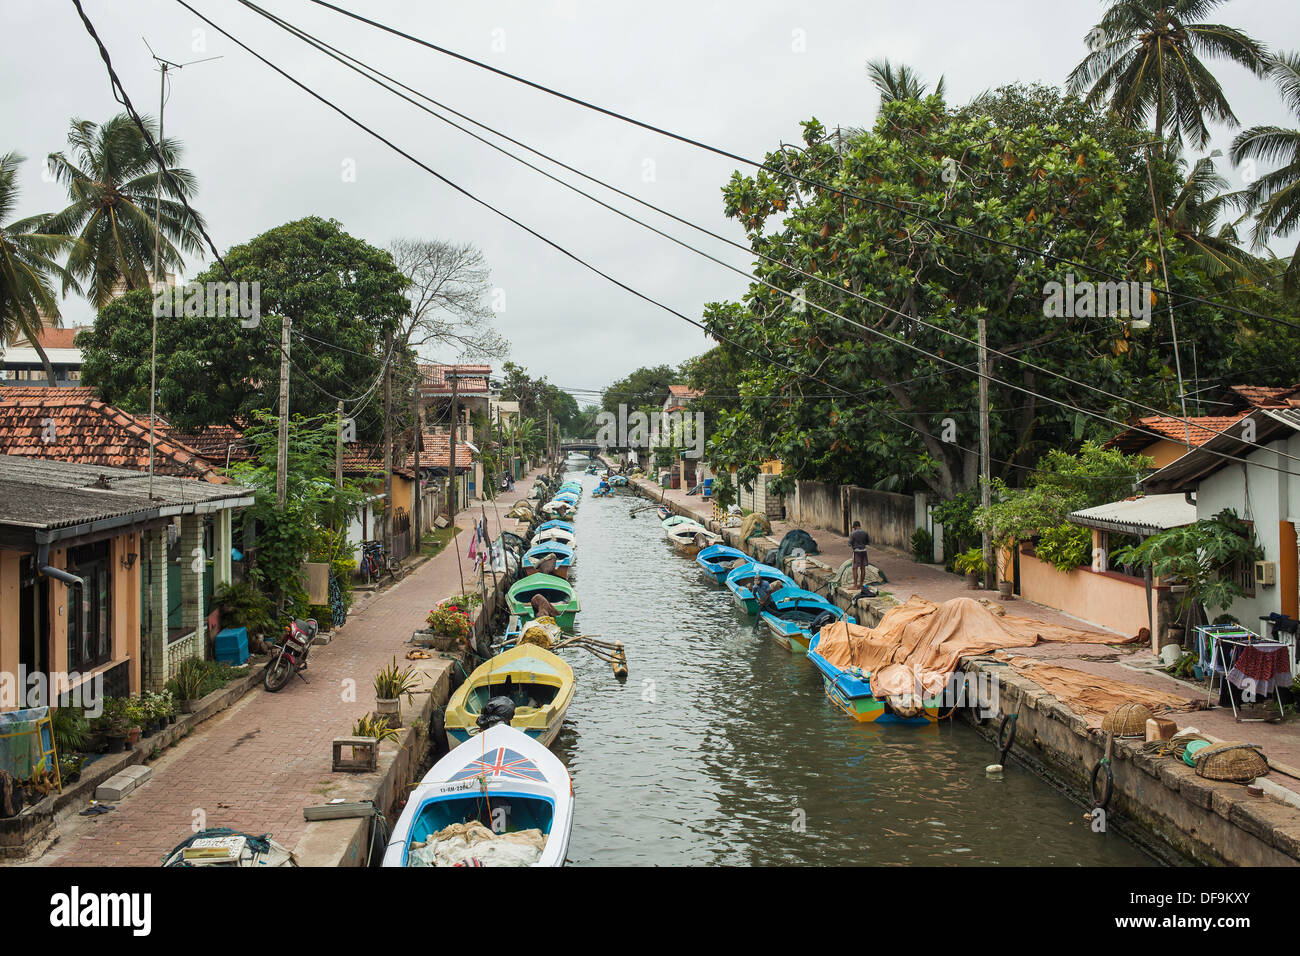 The dutch Hamilton canal in Negombo, Sri Lanka with fishing boats Stock Photo